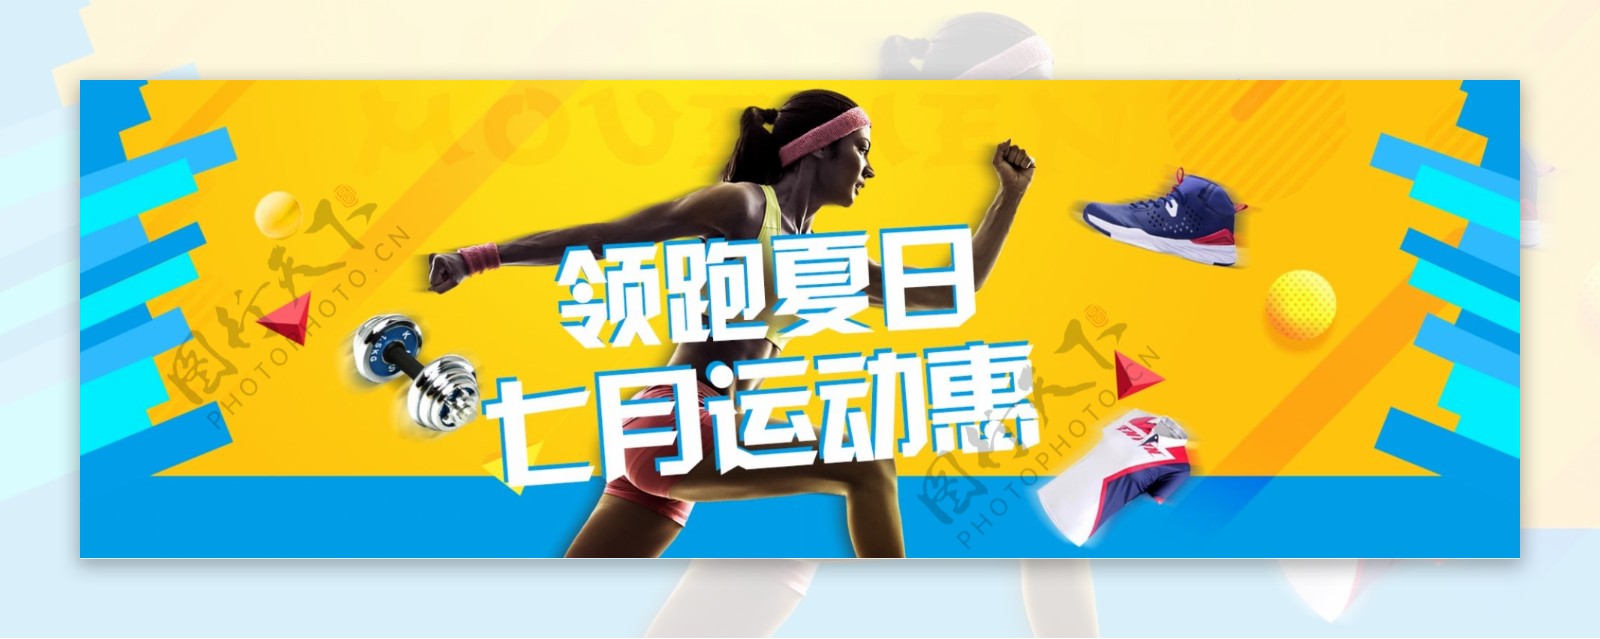 天猫运动惠运动会体育产品活动海报